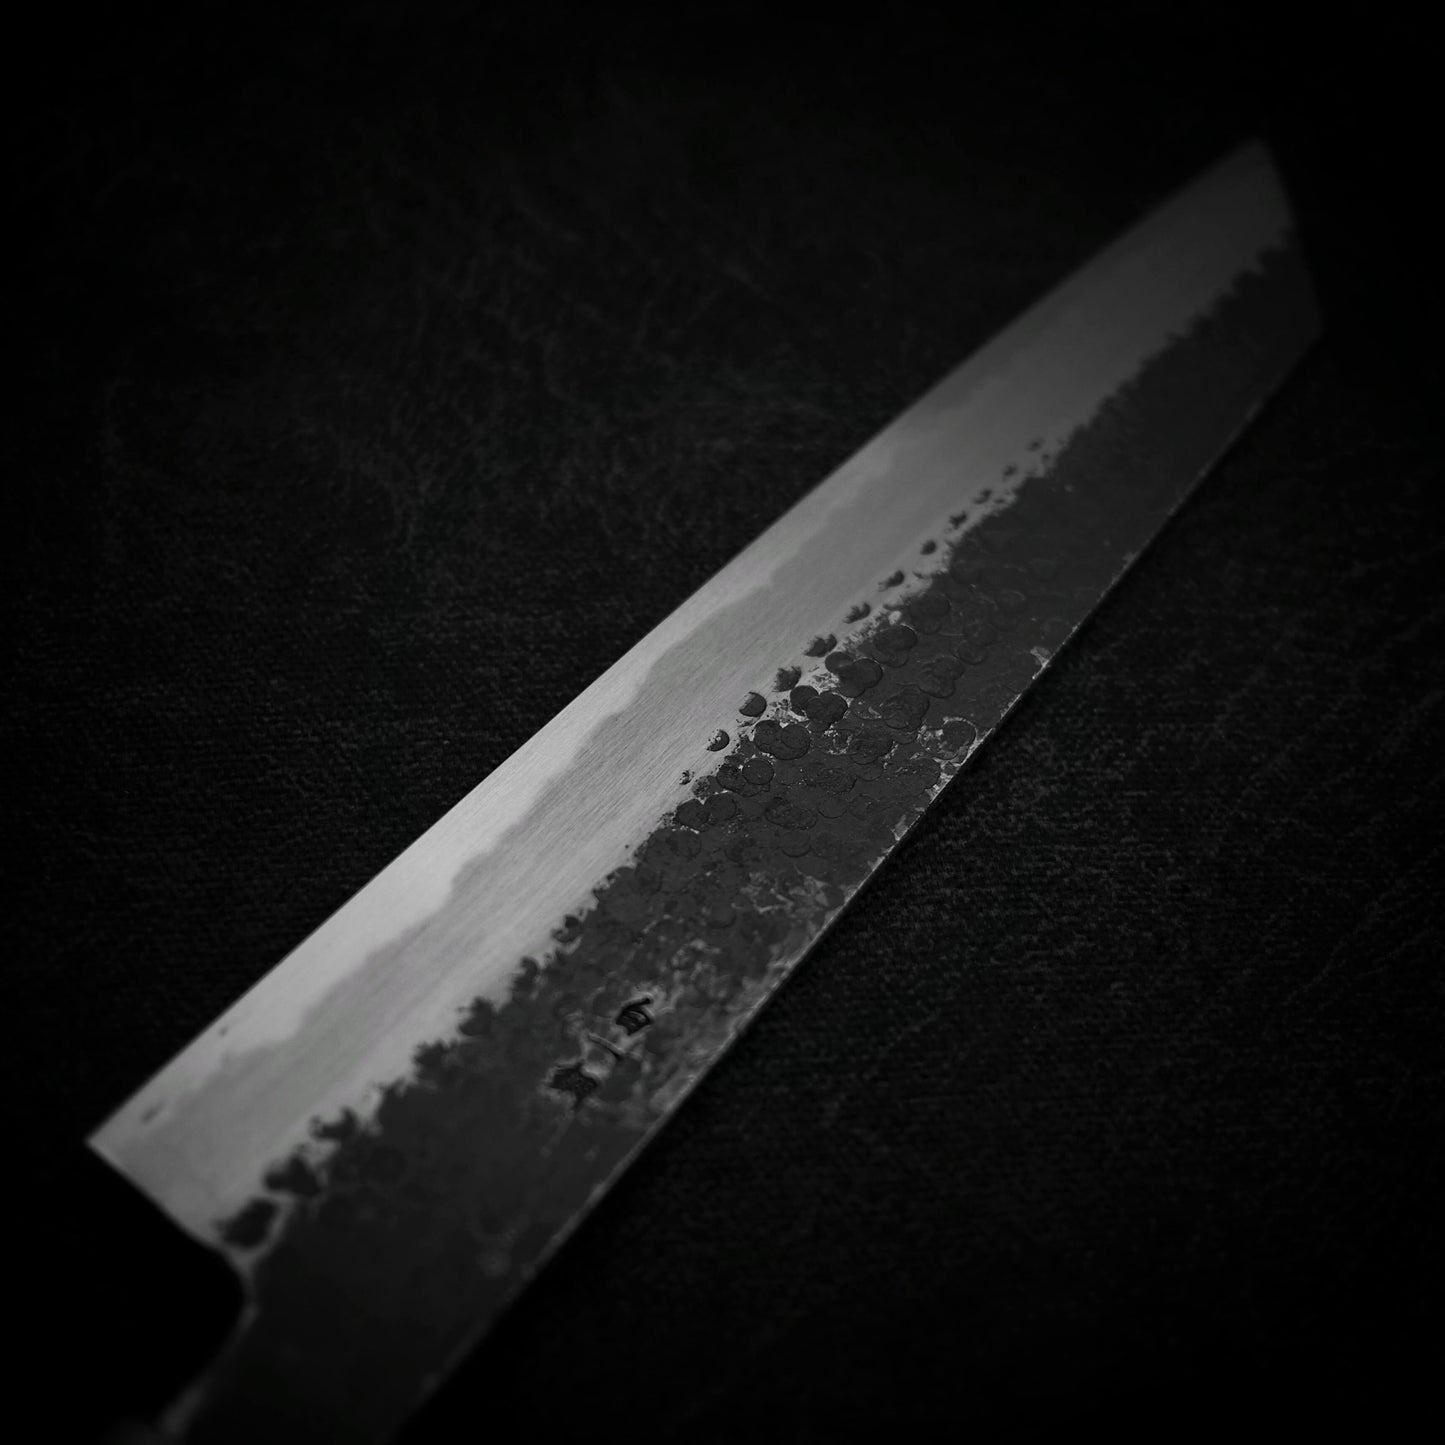 Ittosai Kotetsu tsuchime kurouchi shirogami #1 kiritsuke gyuto 240mm - Zahocho Japanese Knives